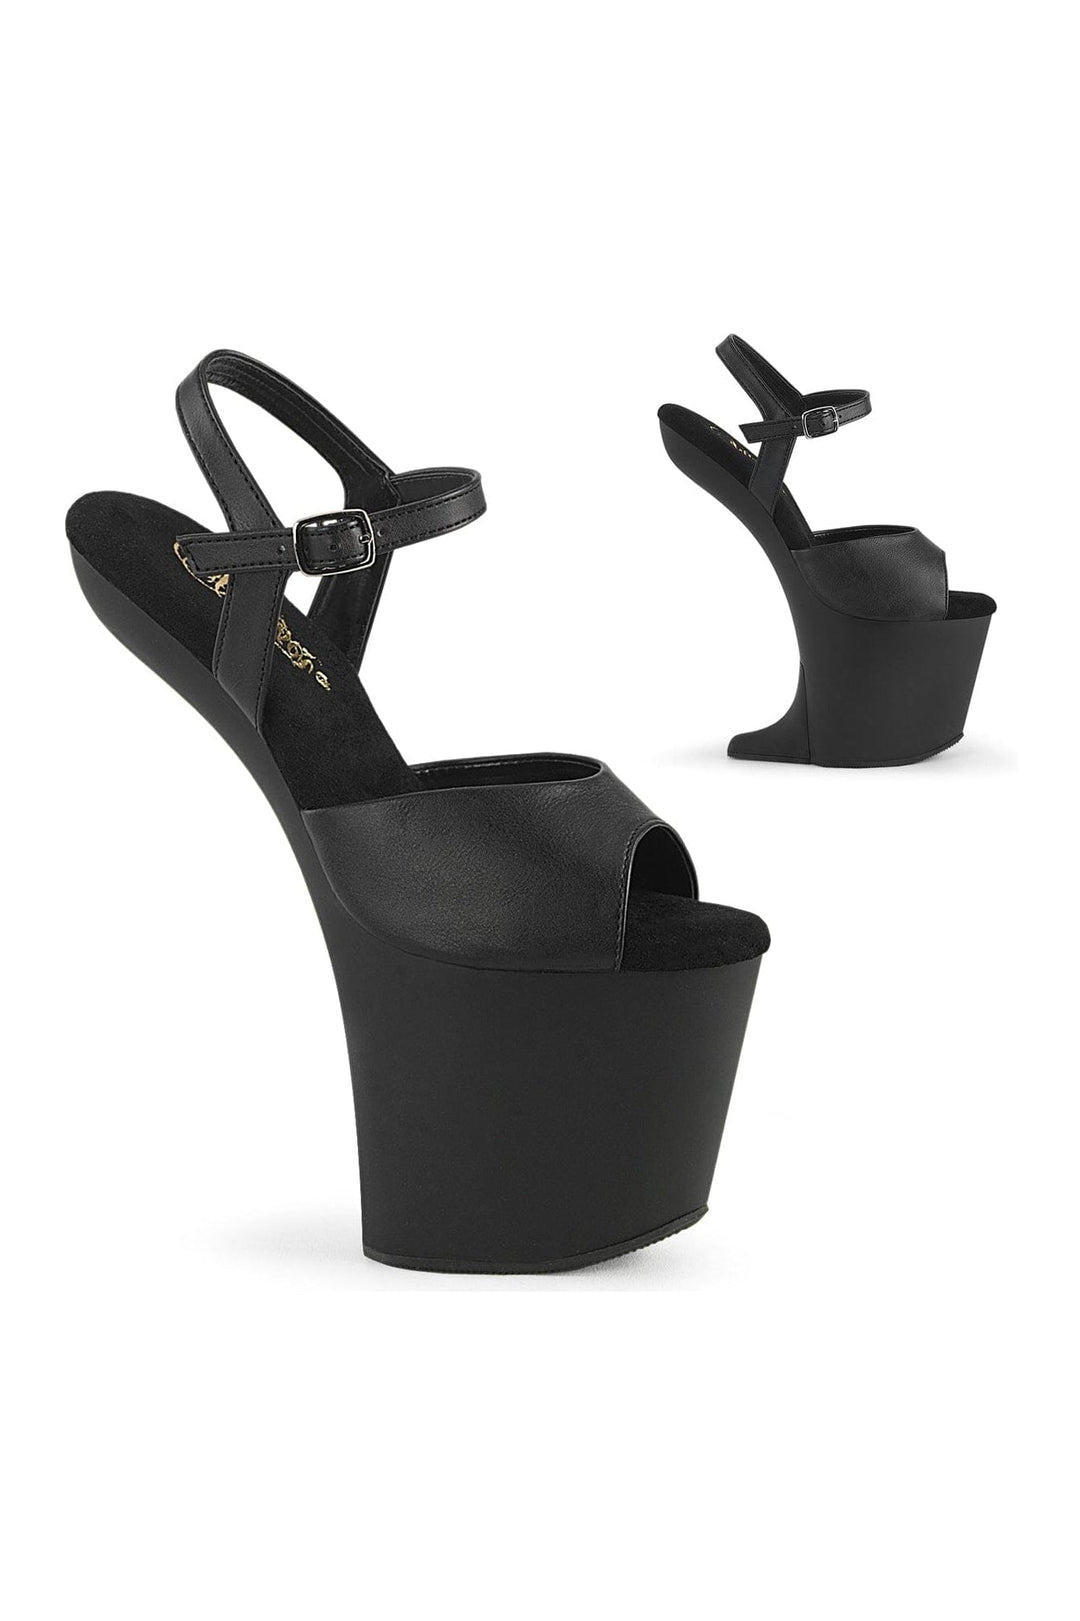 CRAZE-809 Black Faux Leather Sandal-Sandals- Stripper Shoes at SEXYSHOES.COM